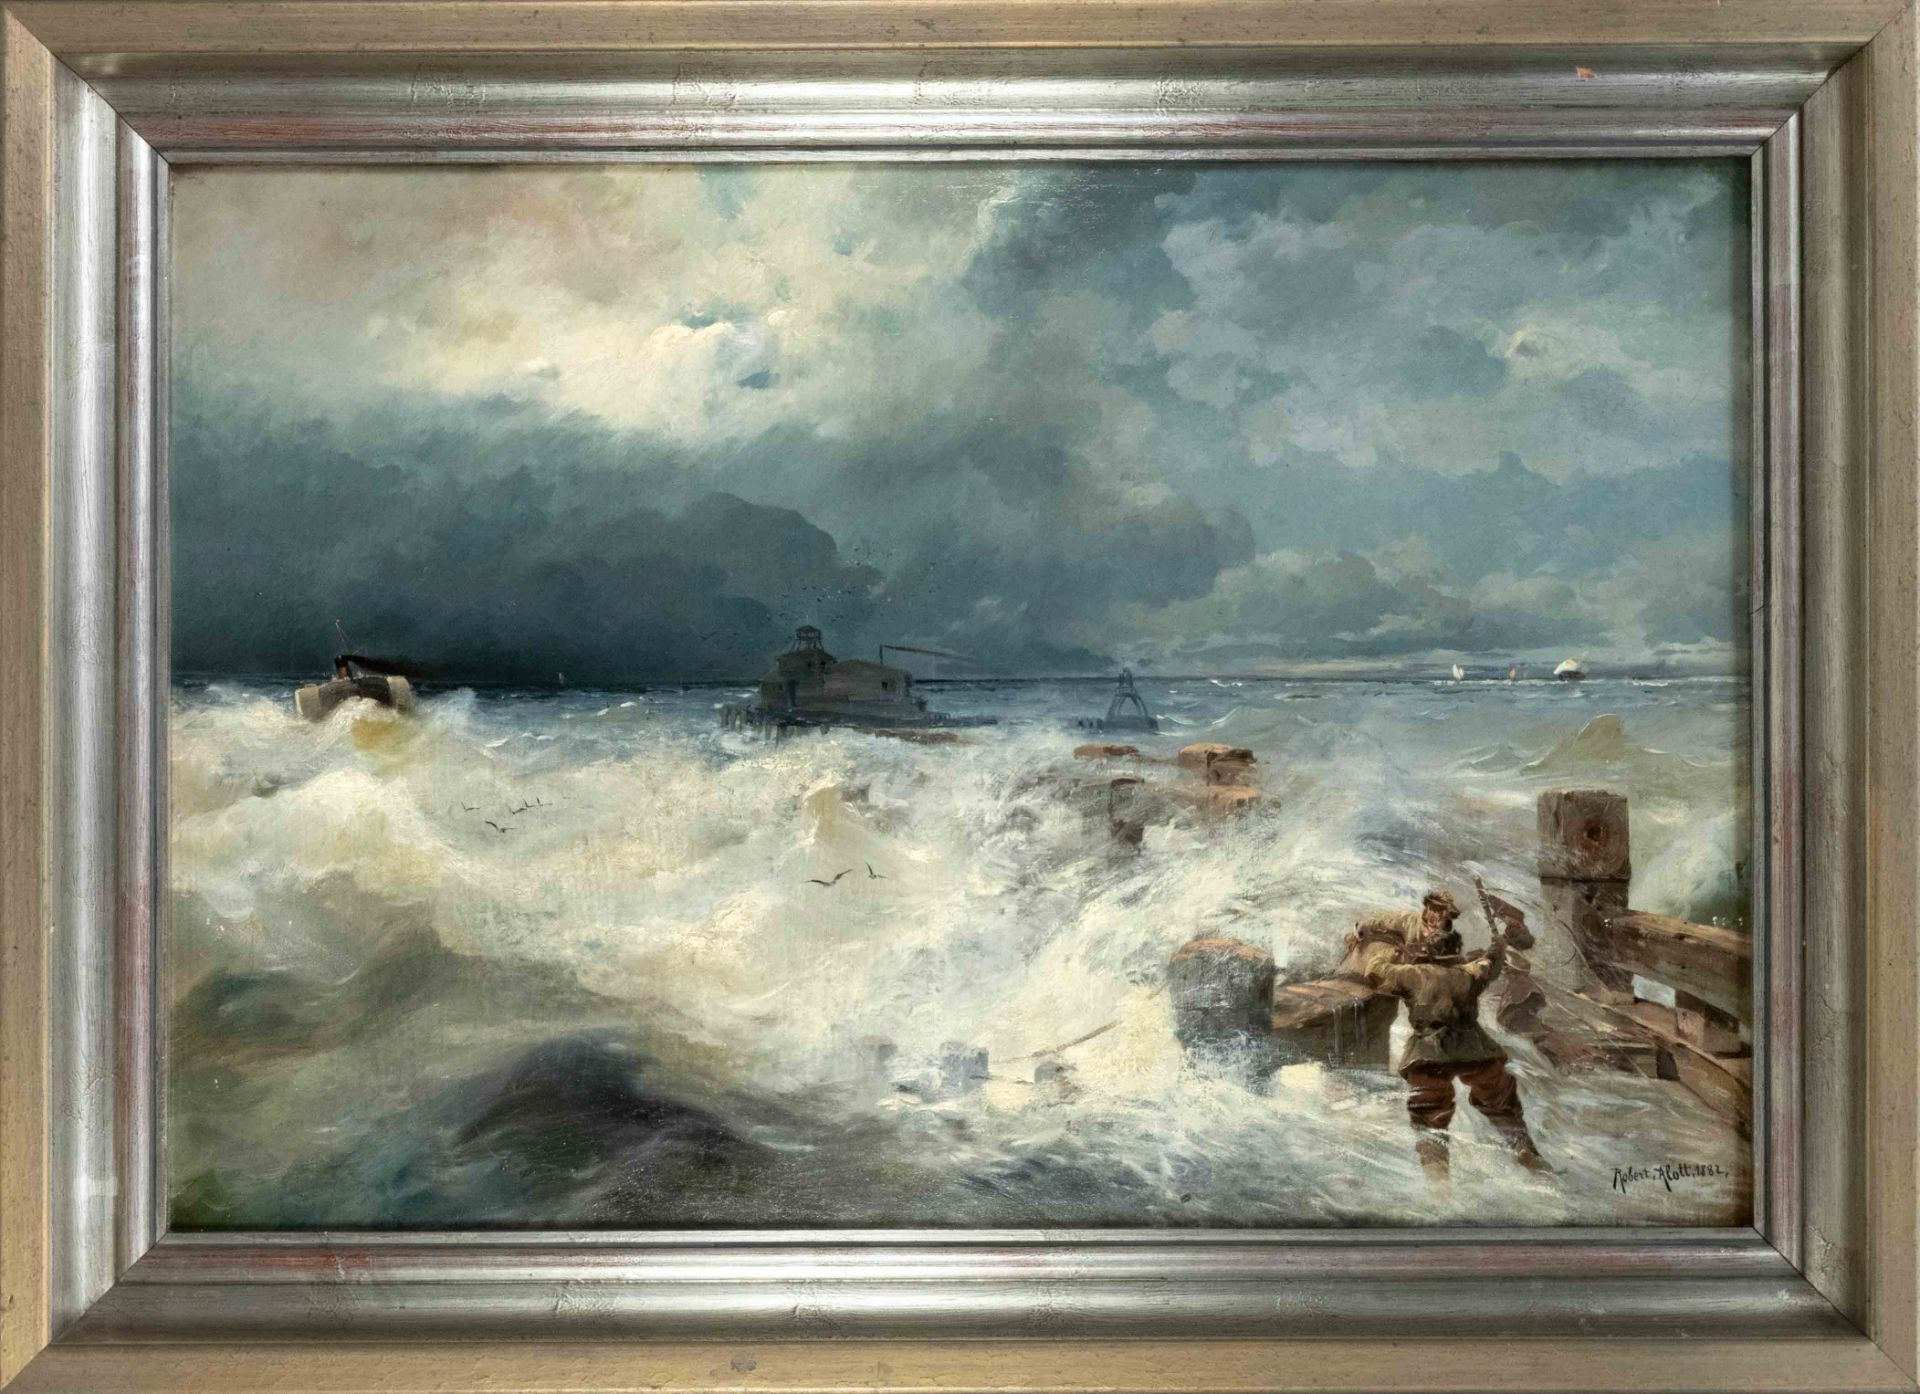 Robert Alott (1850-1910), actually Robert Kronawetter, an Austrian landscape and genre painter of